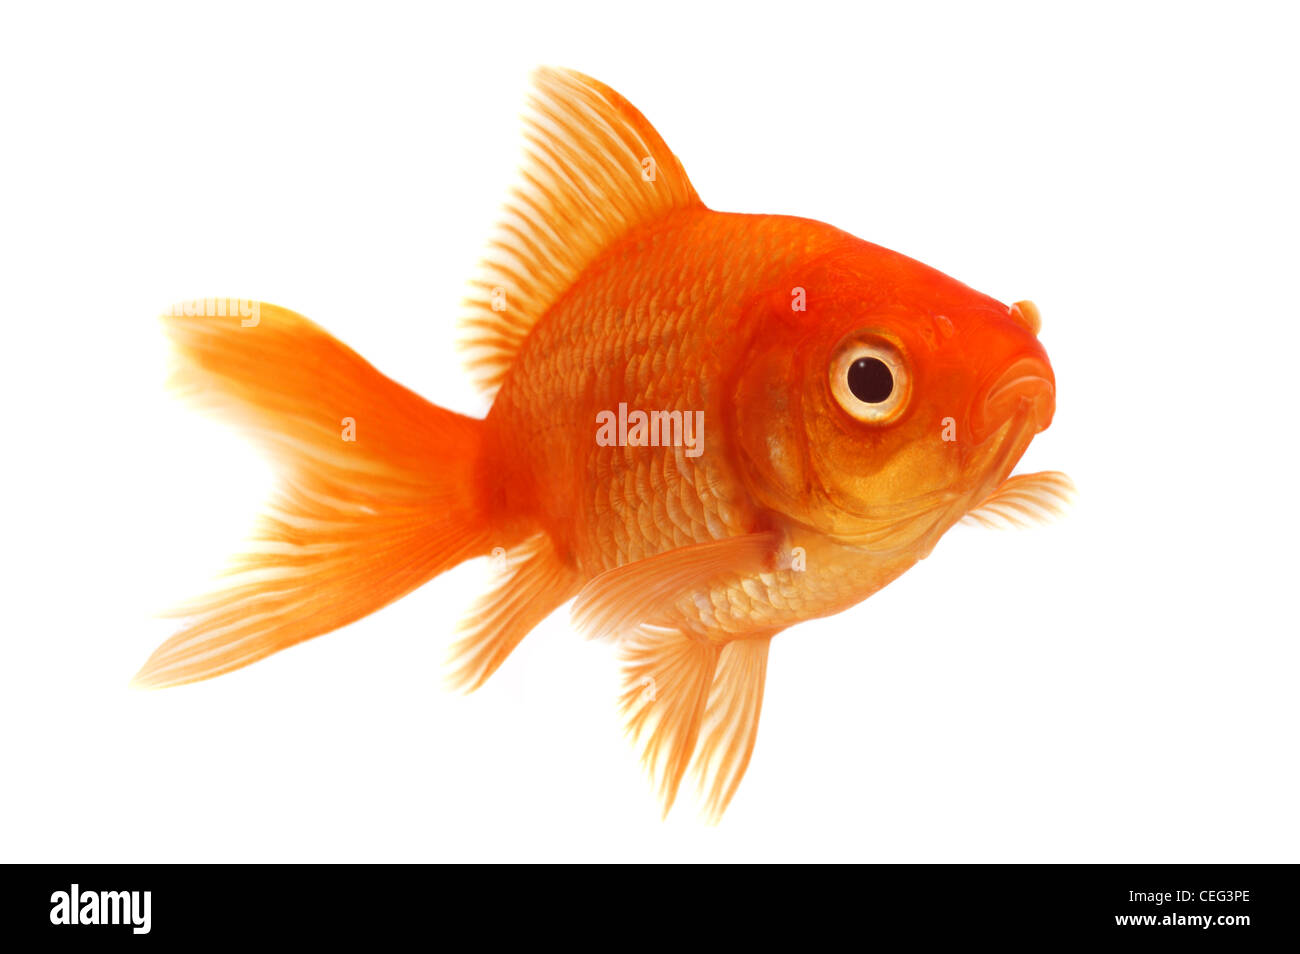 Orange Goldfish on White Stock Photo